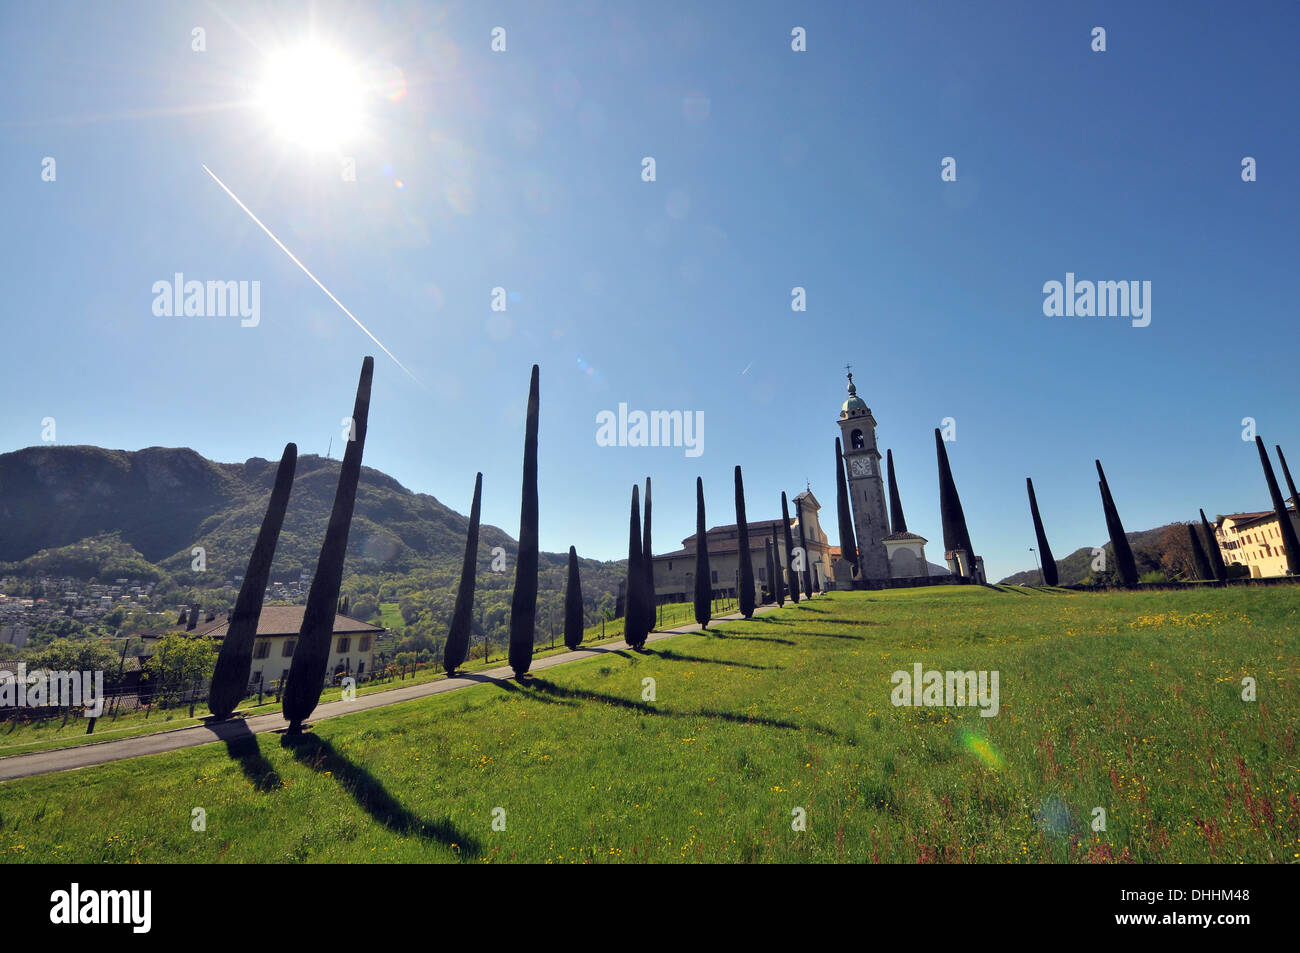 Fc lugano immagini e fotografie stock ad alta risoluzione - Alamy